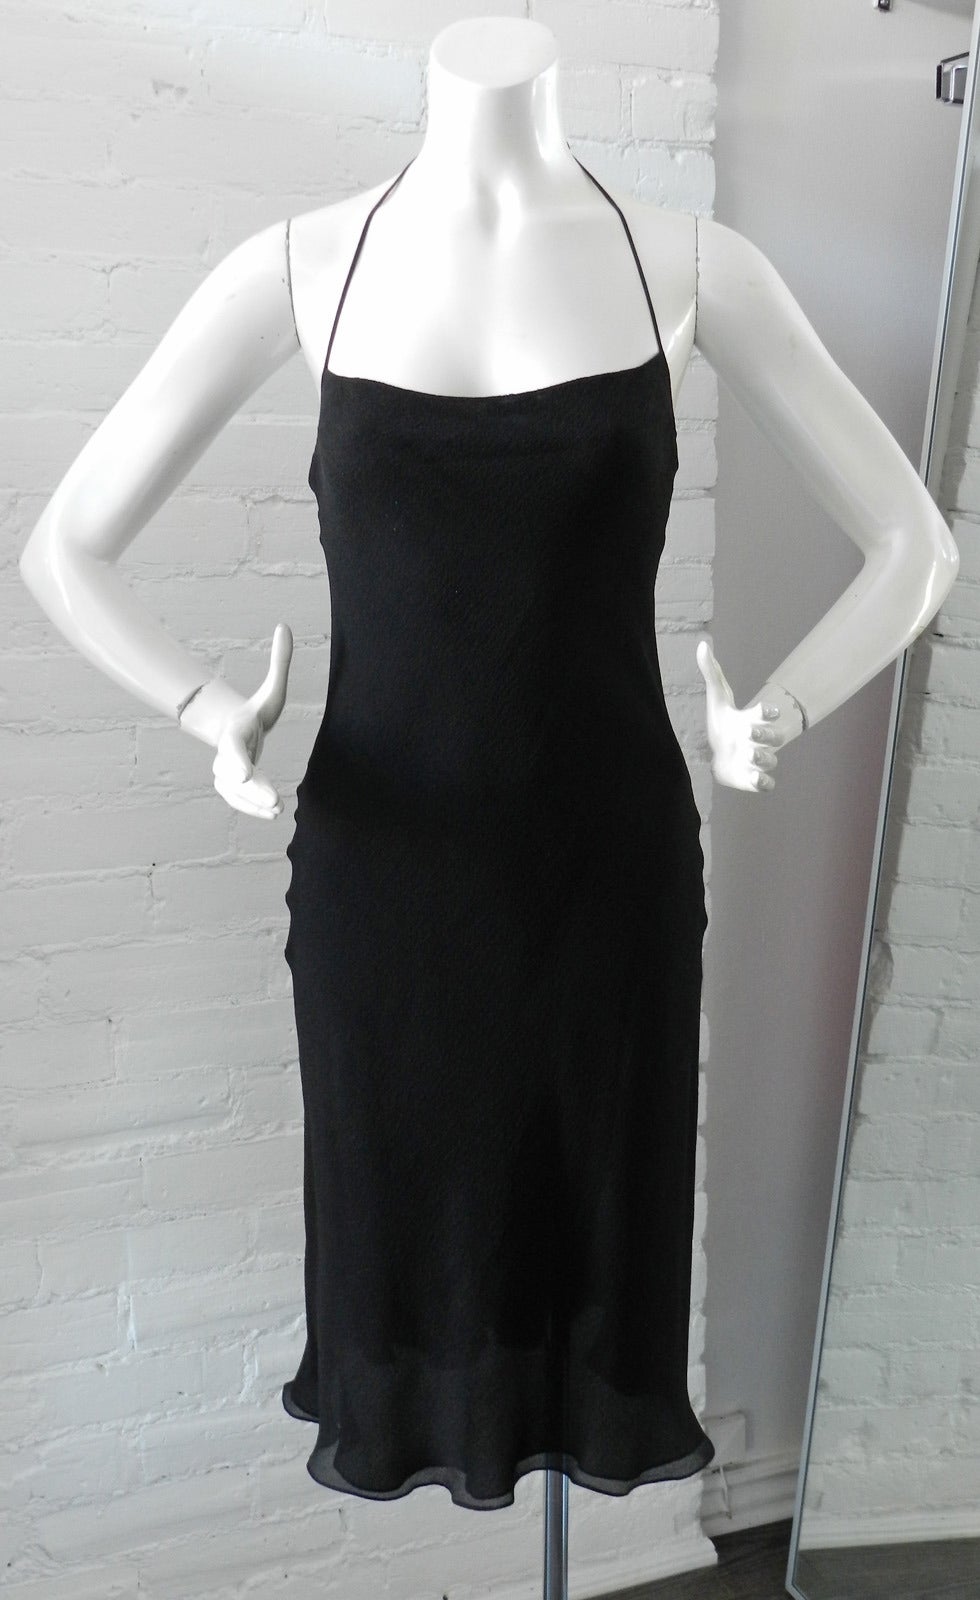 Hermes Fall 2006 Black Silk Dress with Mink Fur Shawl 1